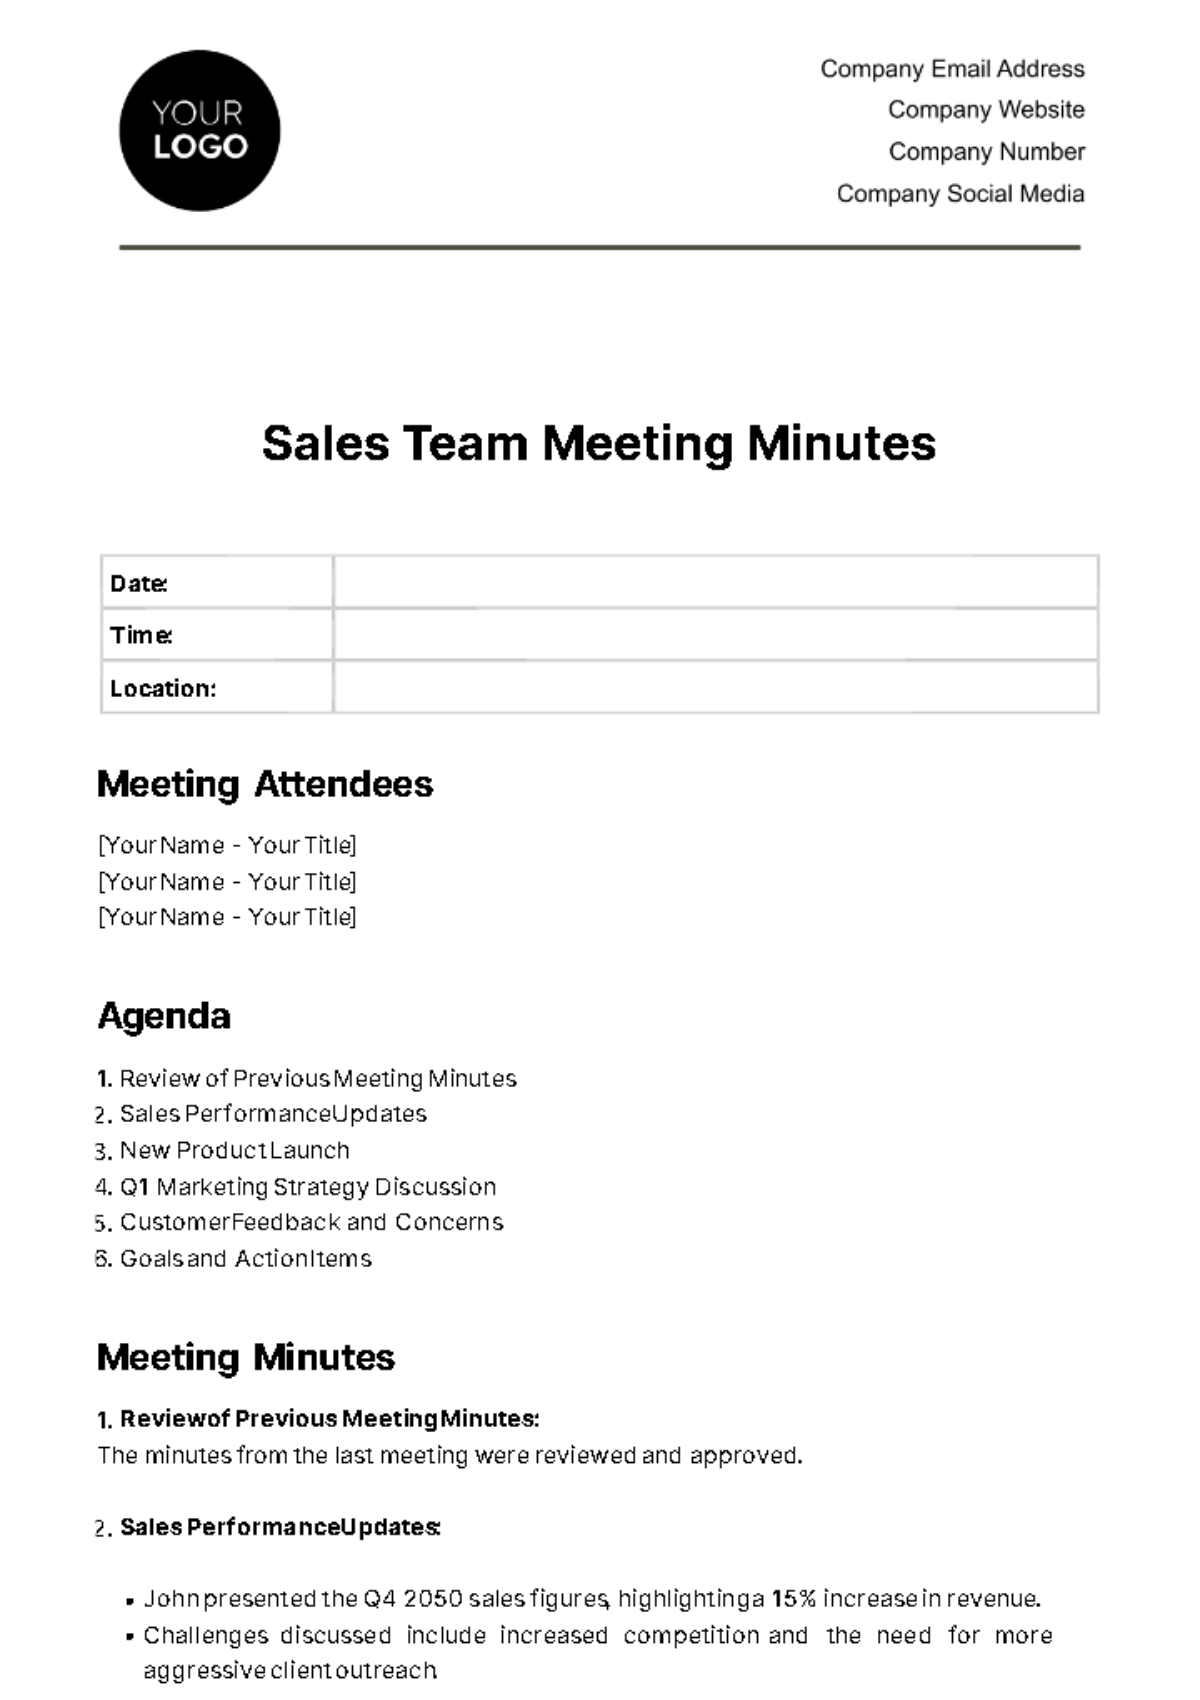 Free Sales Team Meeting Minute Template